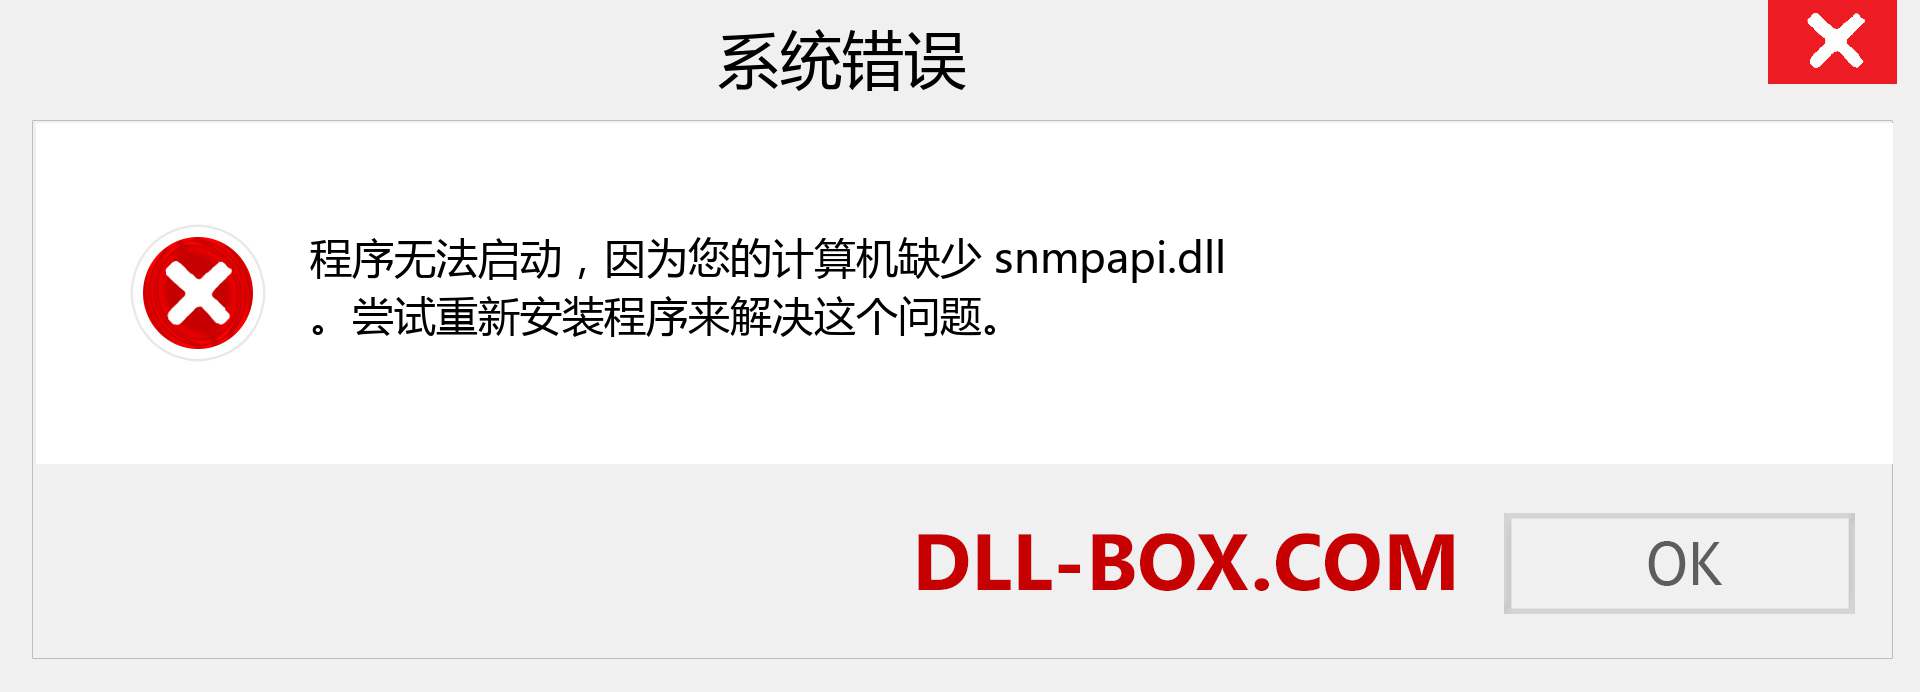 snmpapi.dll 文件丢失？。 适用于 Windows 7、8、10 的下载 - 修复 Windows、照片、图像上的 snmpapi dll 丢失错误